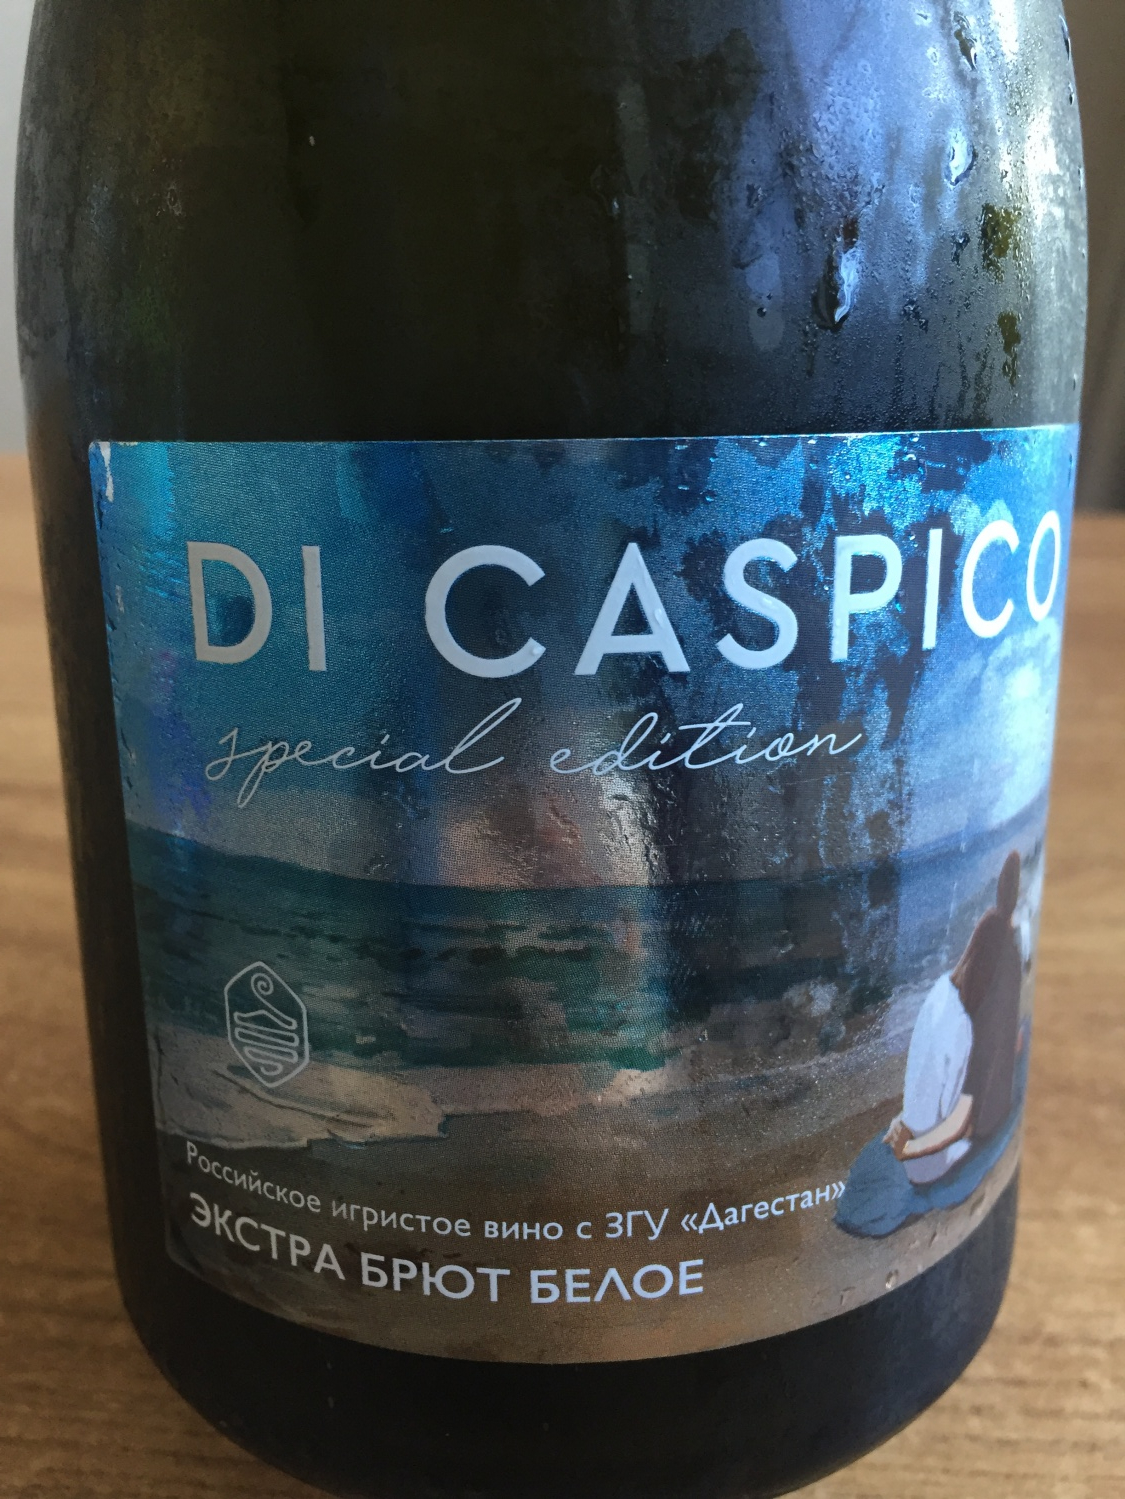 Шампанское каспико. Игристое вино di caspico. Вино игристое ди Каспико. Di caspico вино. Di caspico вино игристое брют.